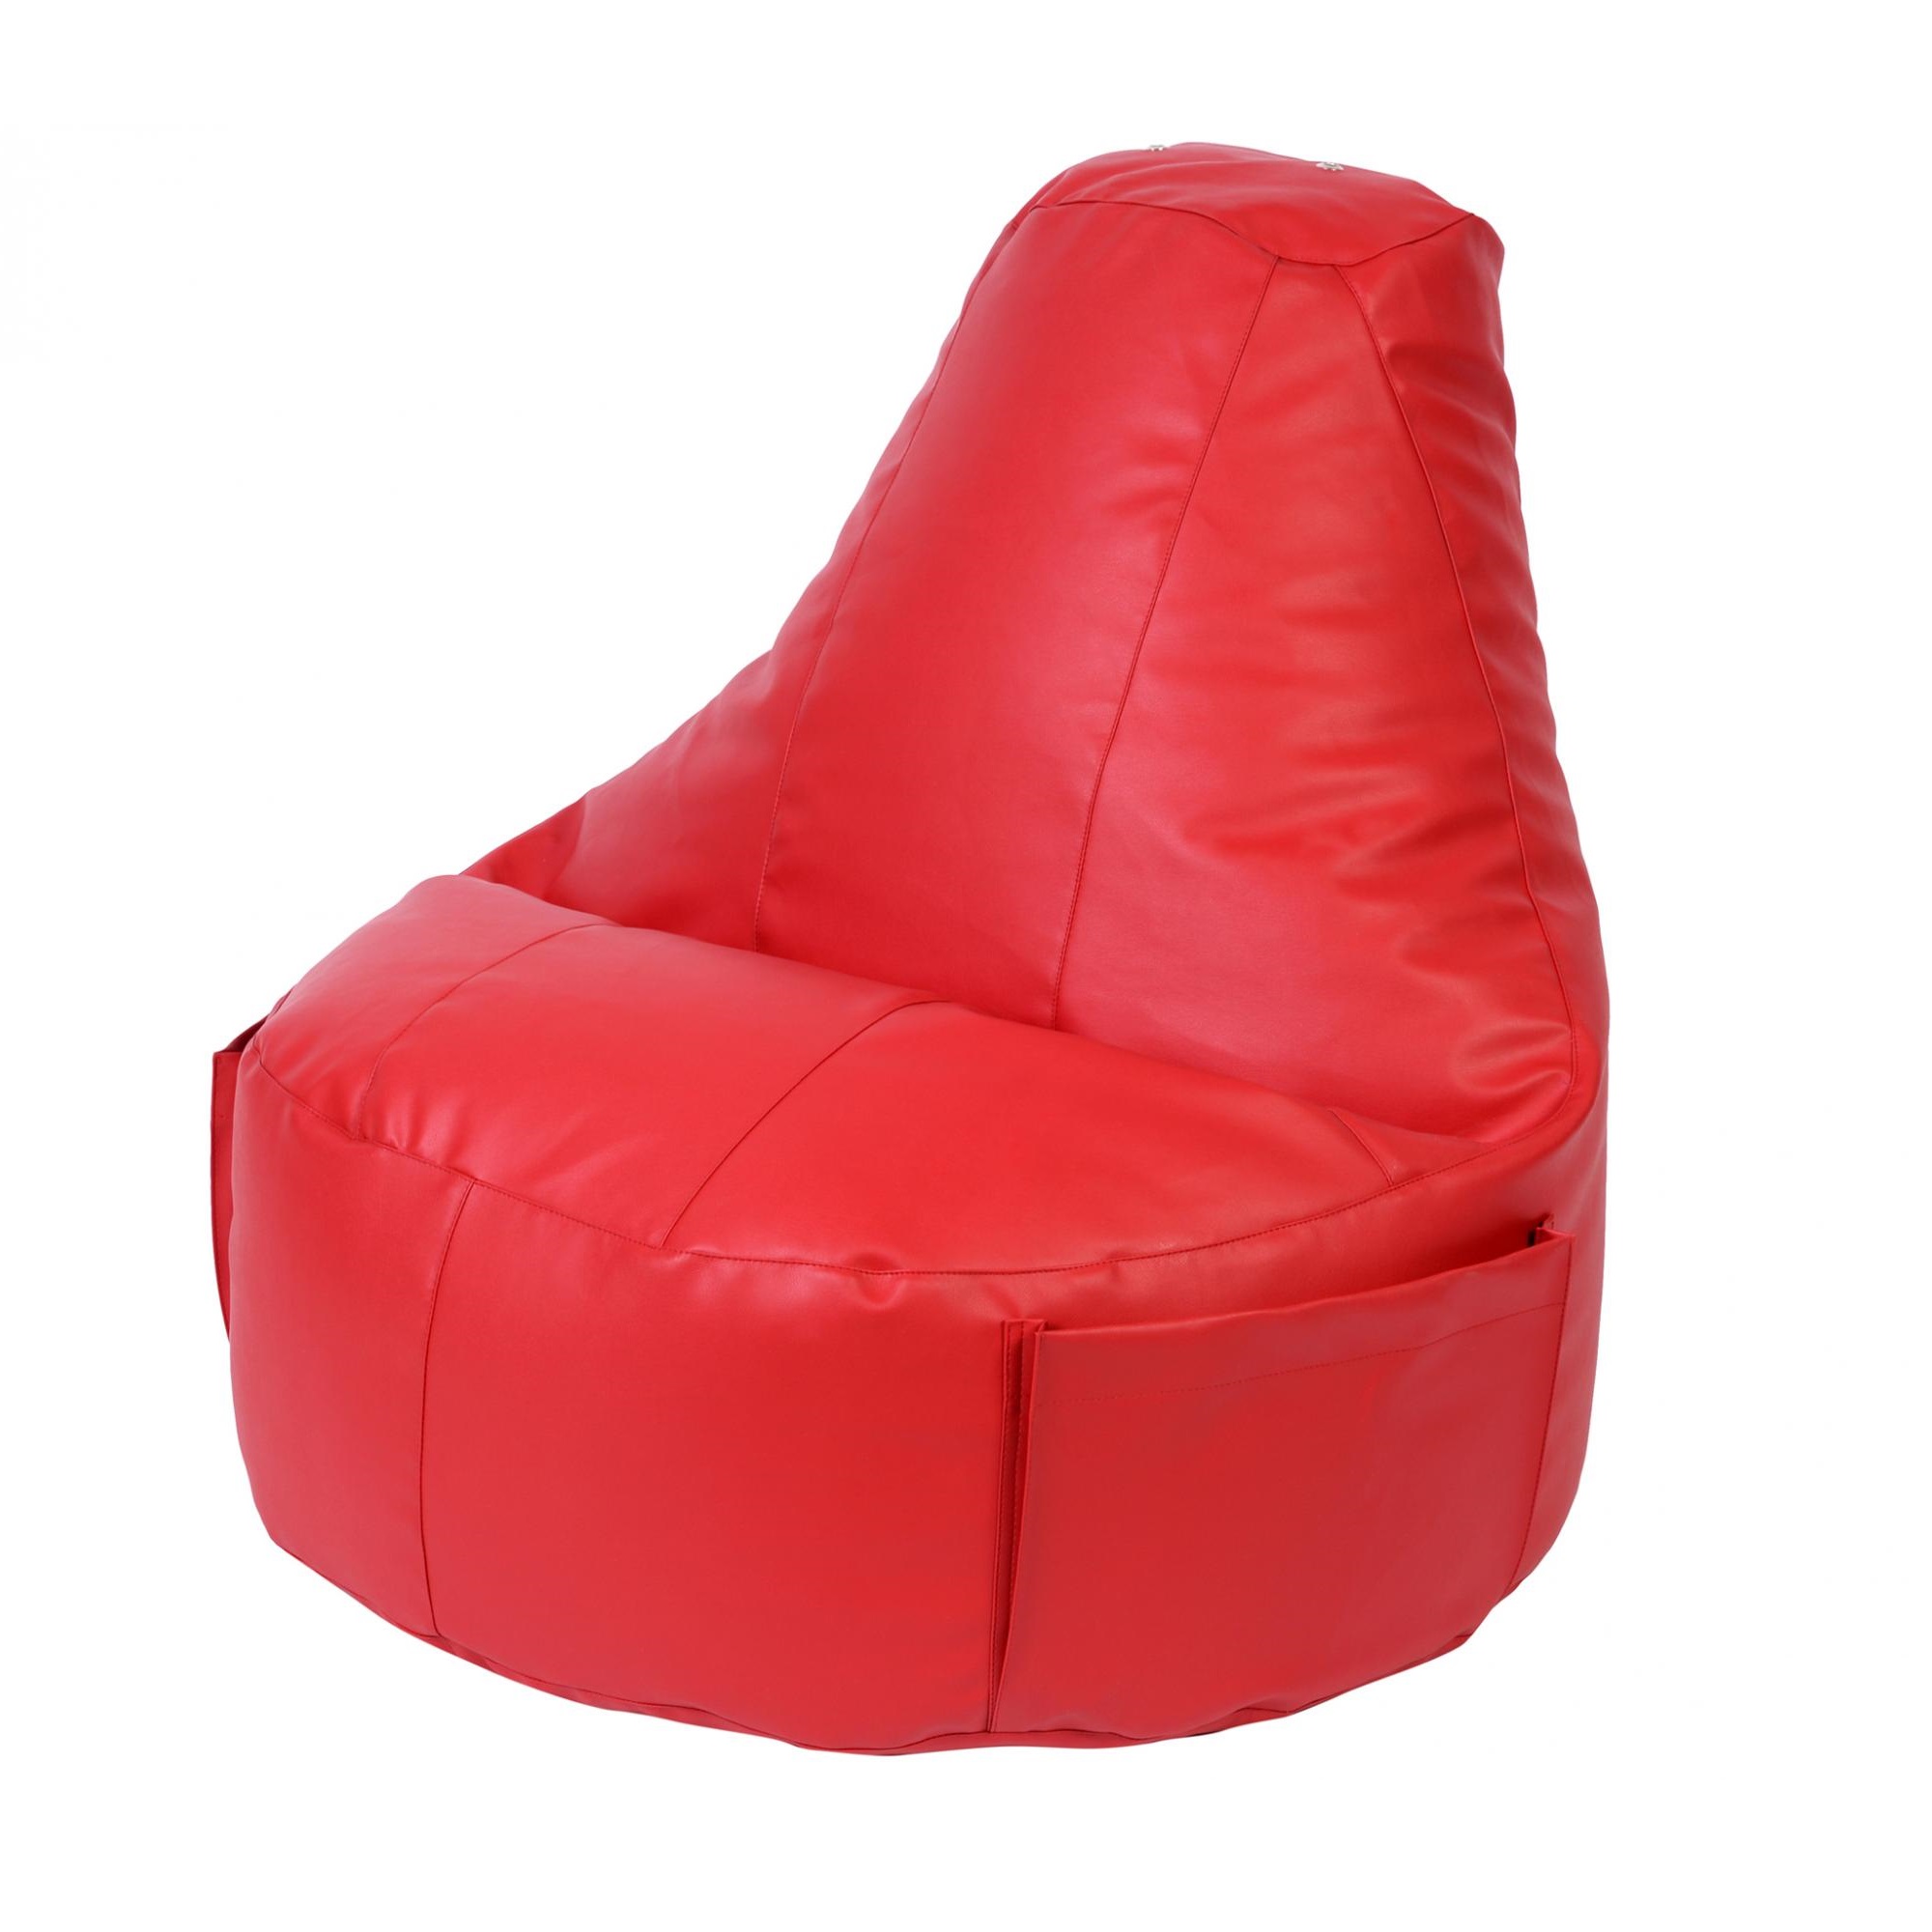 Кресло Dreambag Comfort красное экокожа 150x90 см кресло dreambag comfort синее экокожа 150x90 см